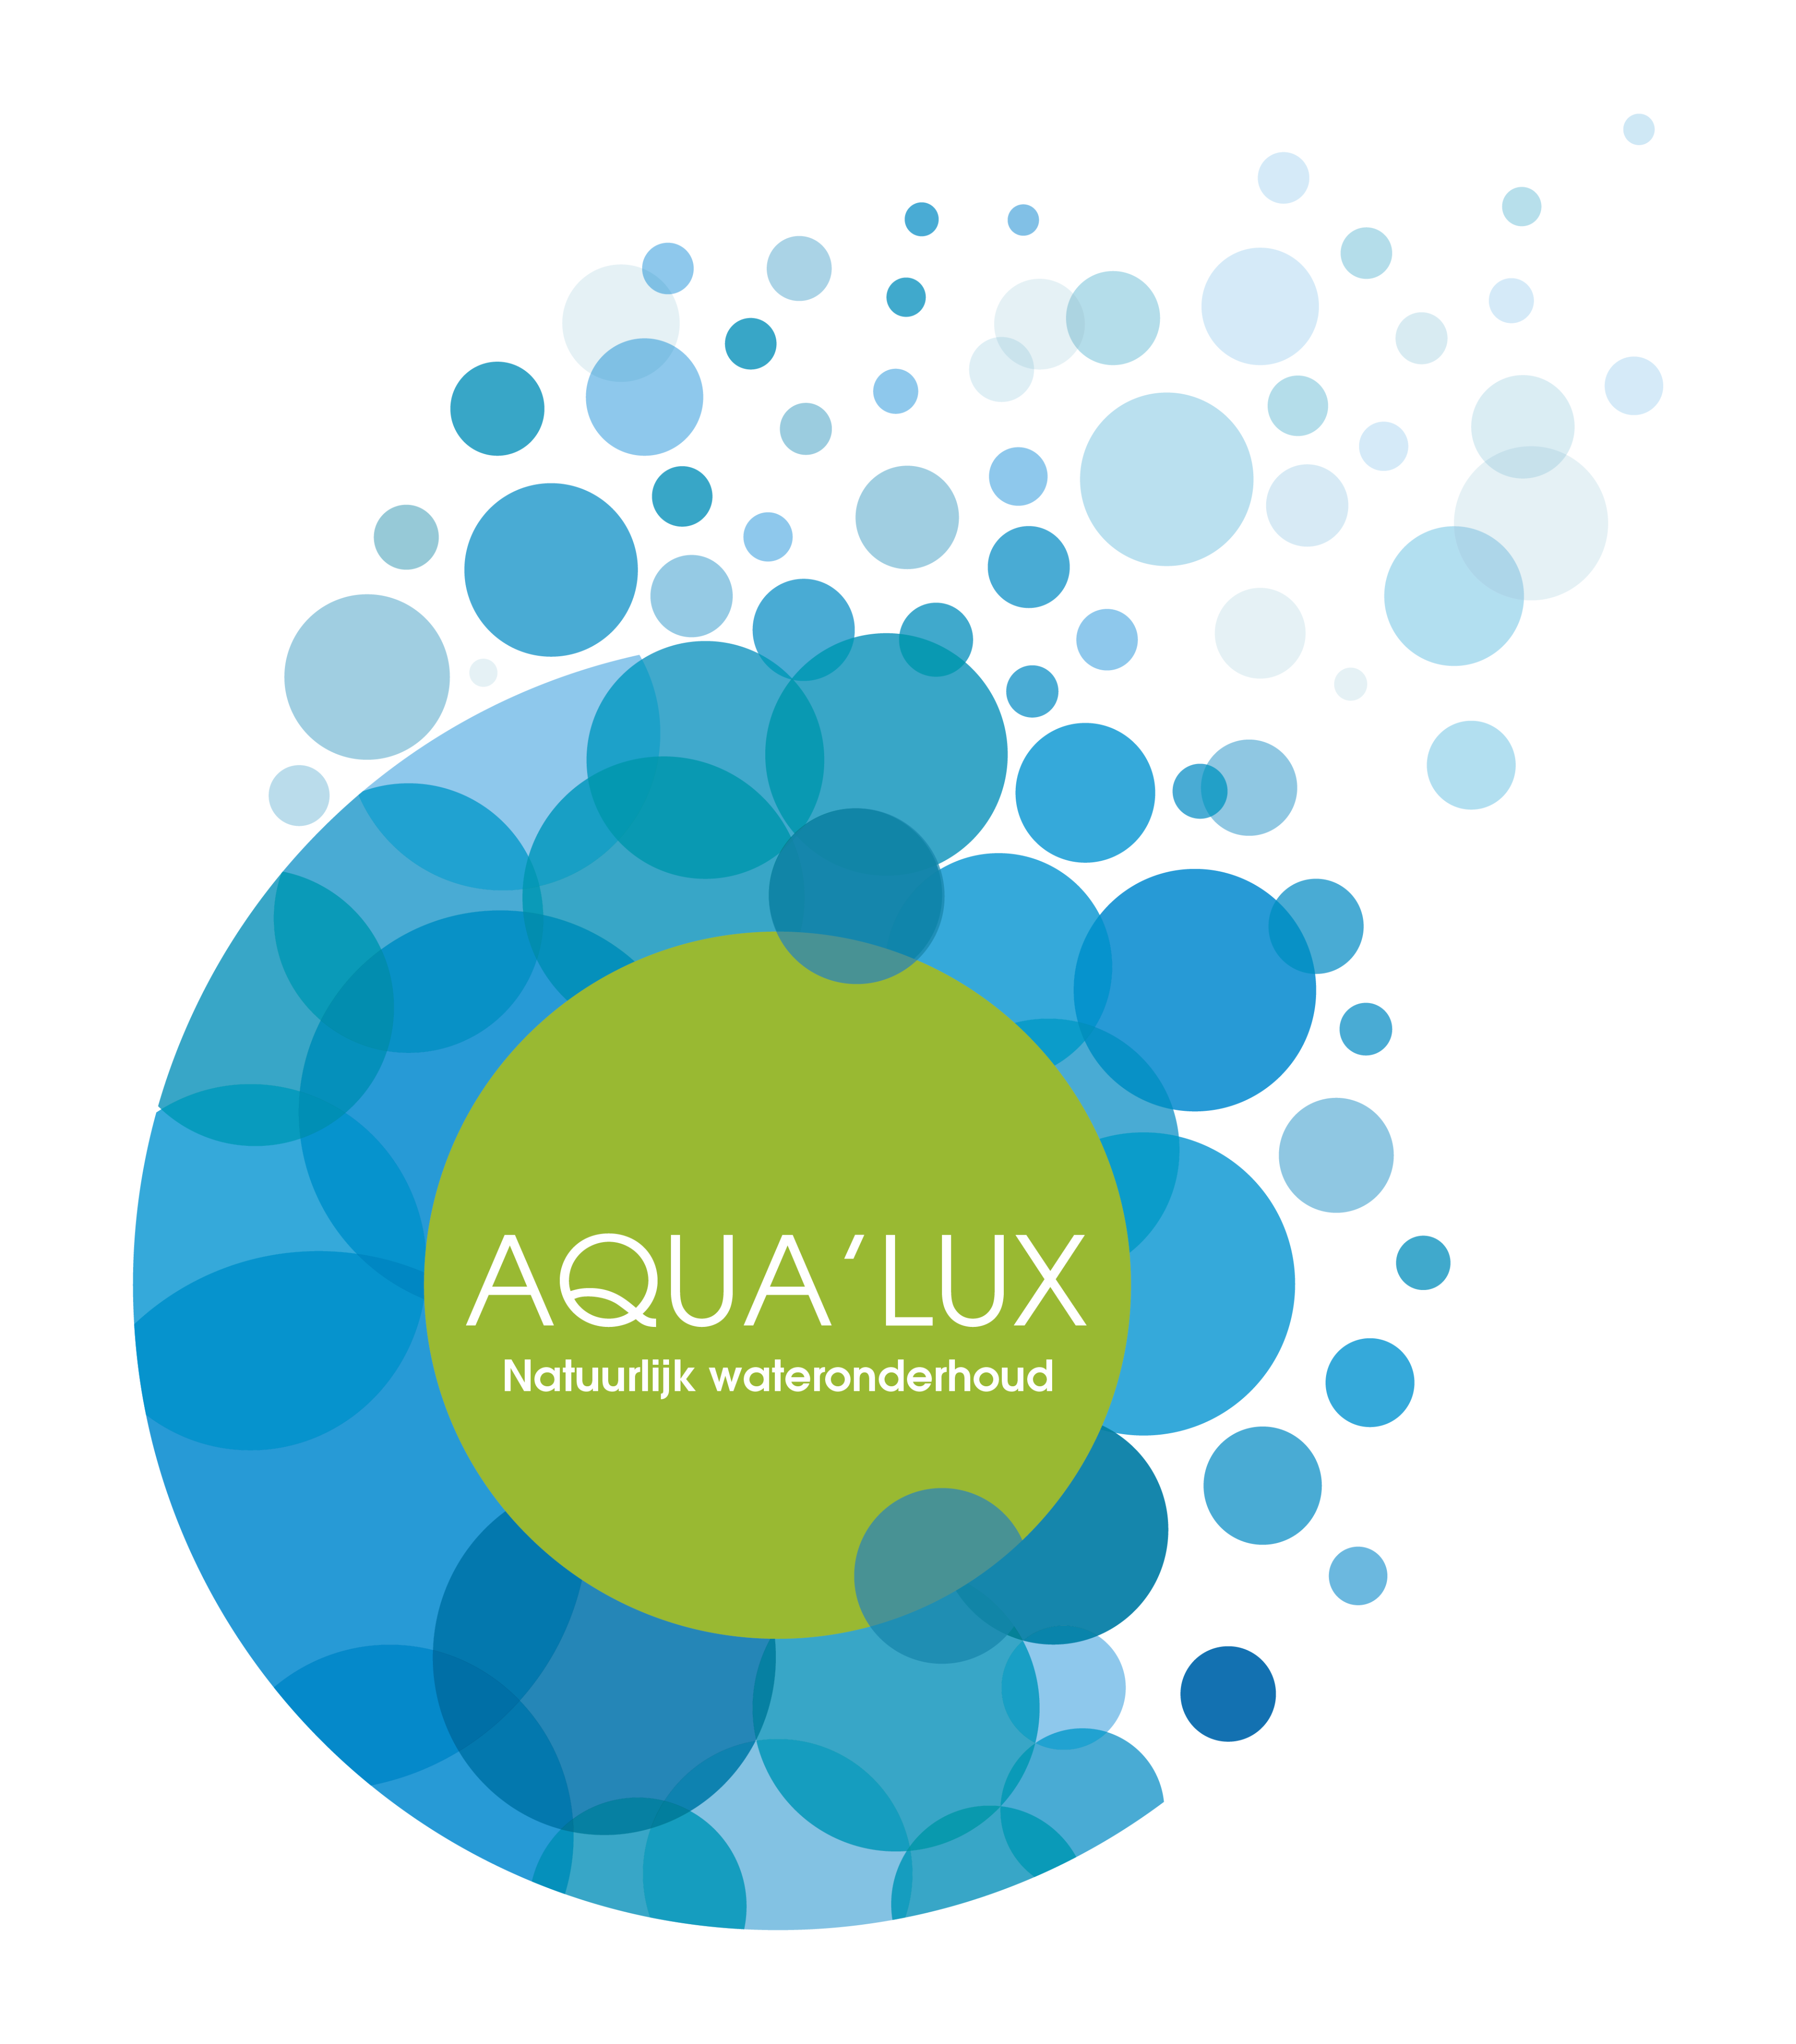 aqualux-wateronderhoud-programma-bij-hanolux-garantie.png